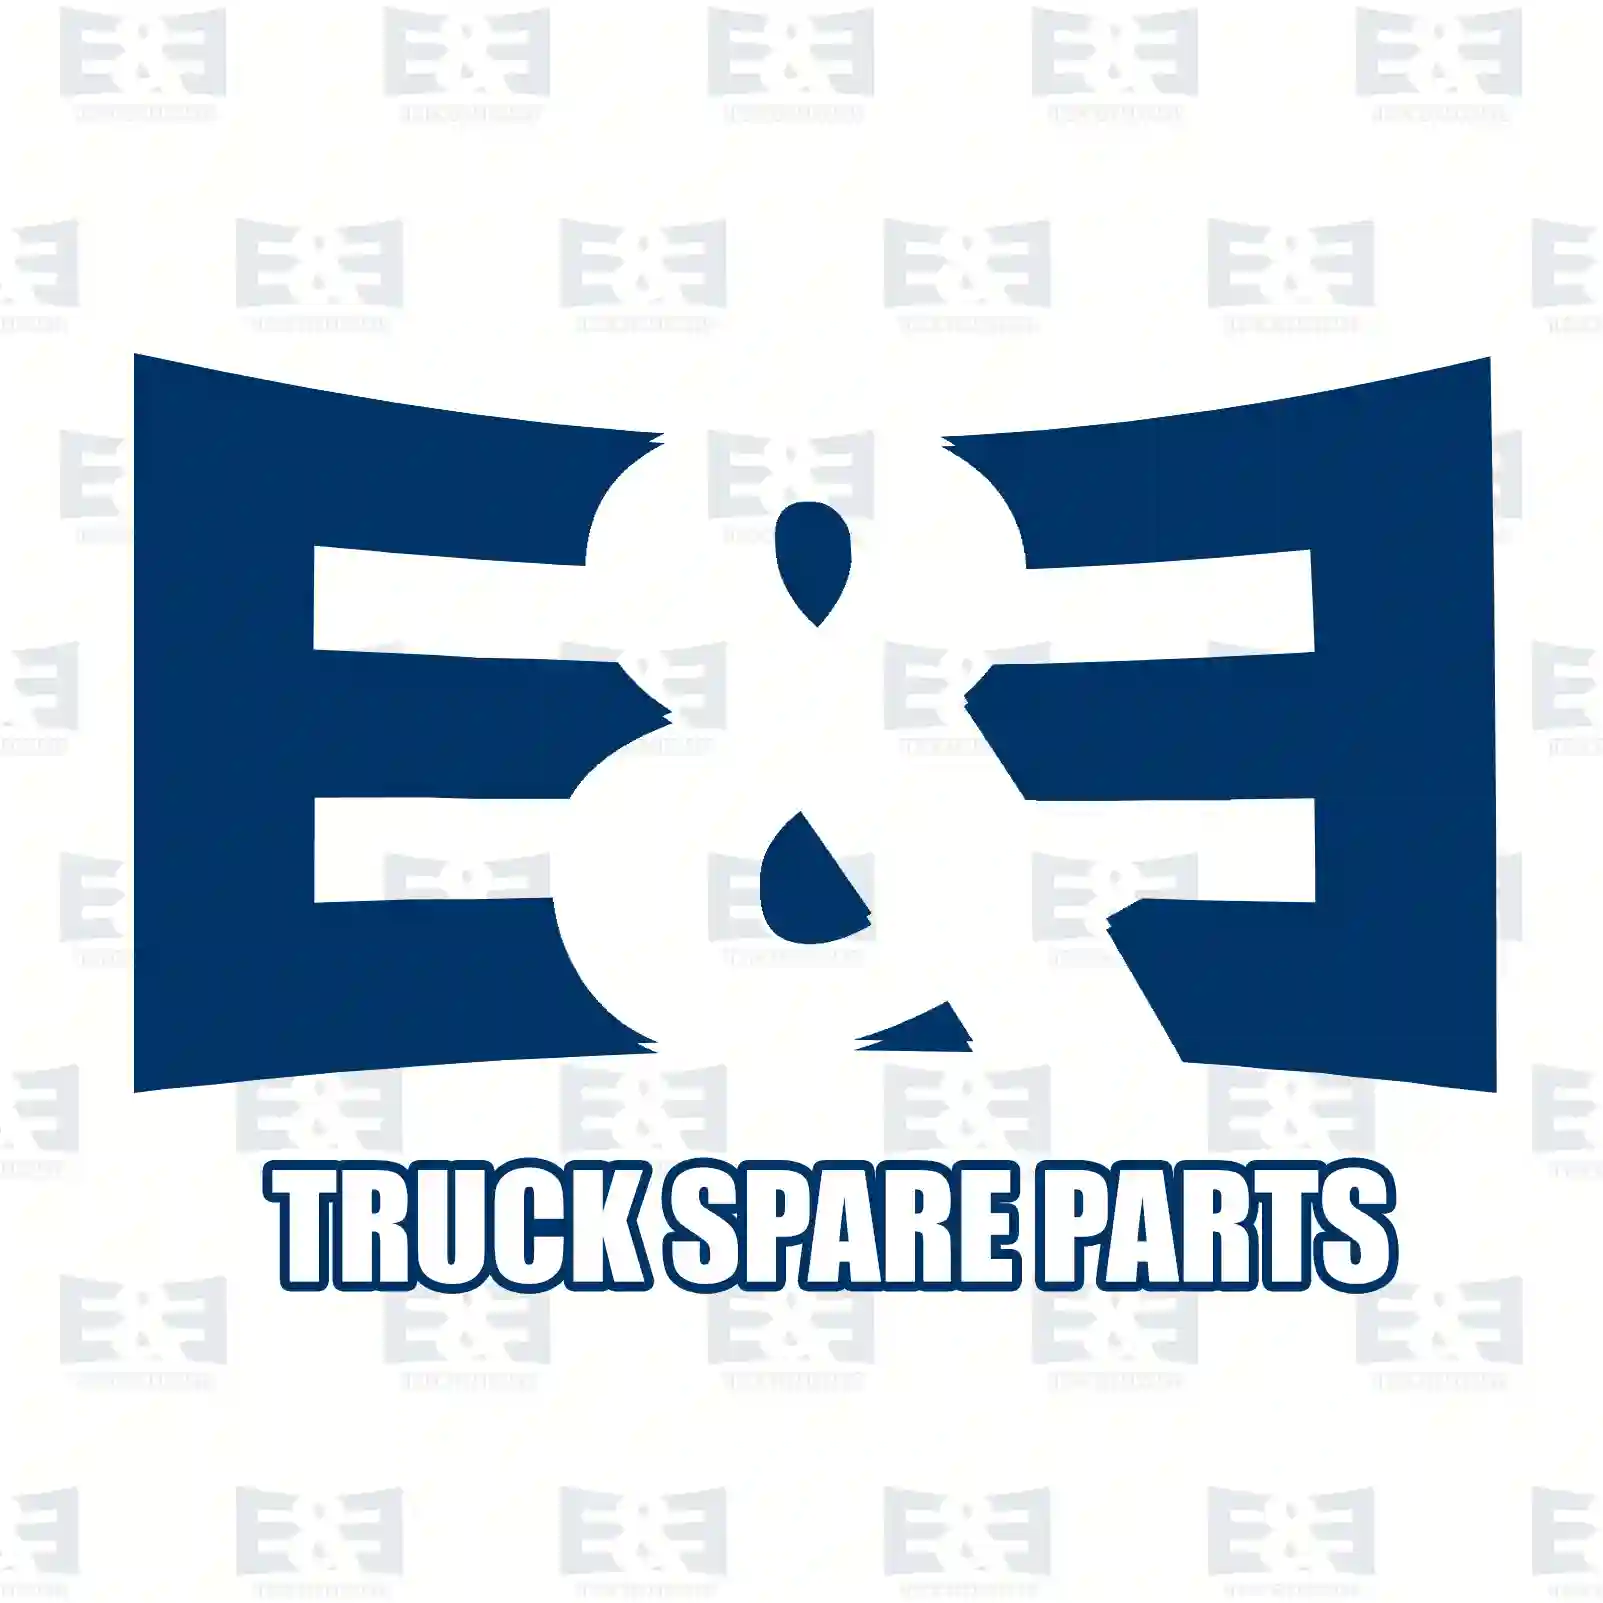 Track rod, 2E2270791, 81467106236, 81467106267, 81467106268, 81467106355, 81467106356, 81467106373, 81467116723, 81467116794, 81467116933, 81467116934, 81467116966 ||  2E2270791 E&E Truck Spare Parts | Truck Spare Parts, Auotomotive Spare Parts Track rod, 2E2270791, 81467106236, 81467106267, 81467106268, 81467106355, 81467106356, 81467106373, 81467116723, 81467116794, 81467116933, 81467116934, 81467116966 ||  2E2270791 E&E Truck Spare Parts | Truck Spare Parts, Auotomotive Spare Parts